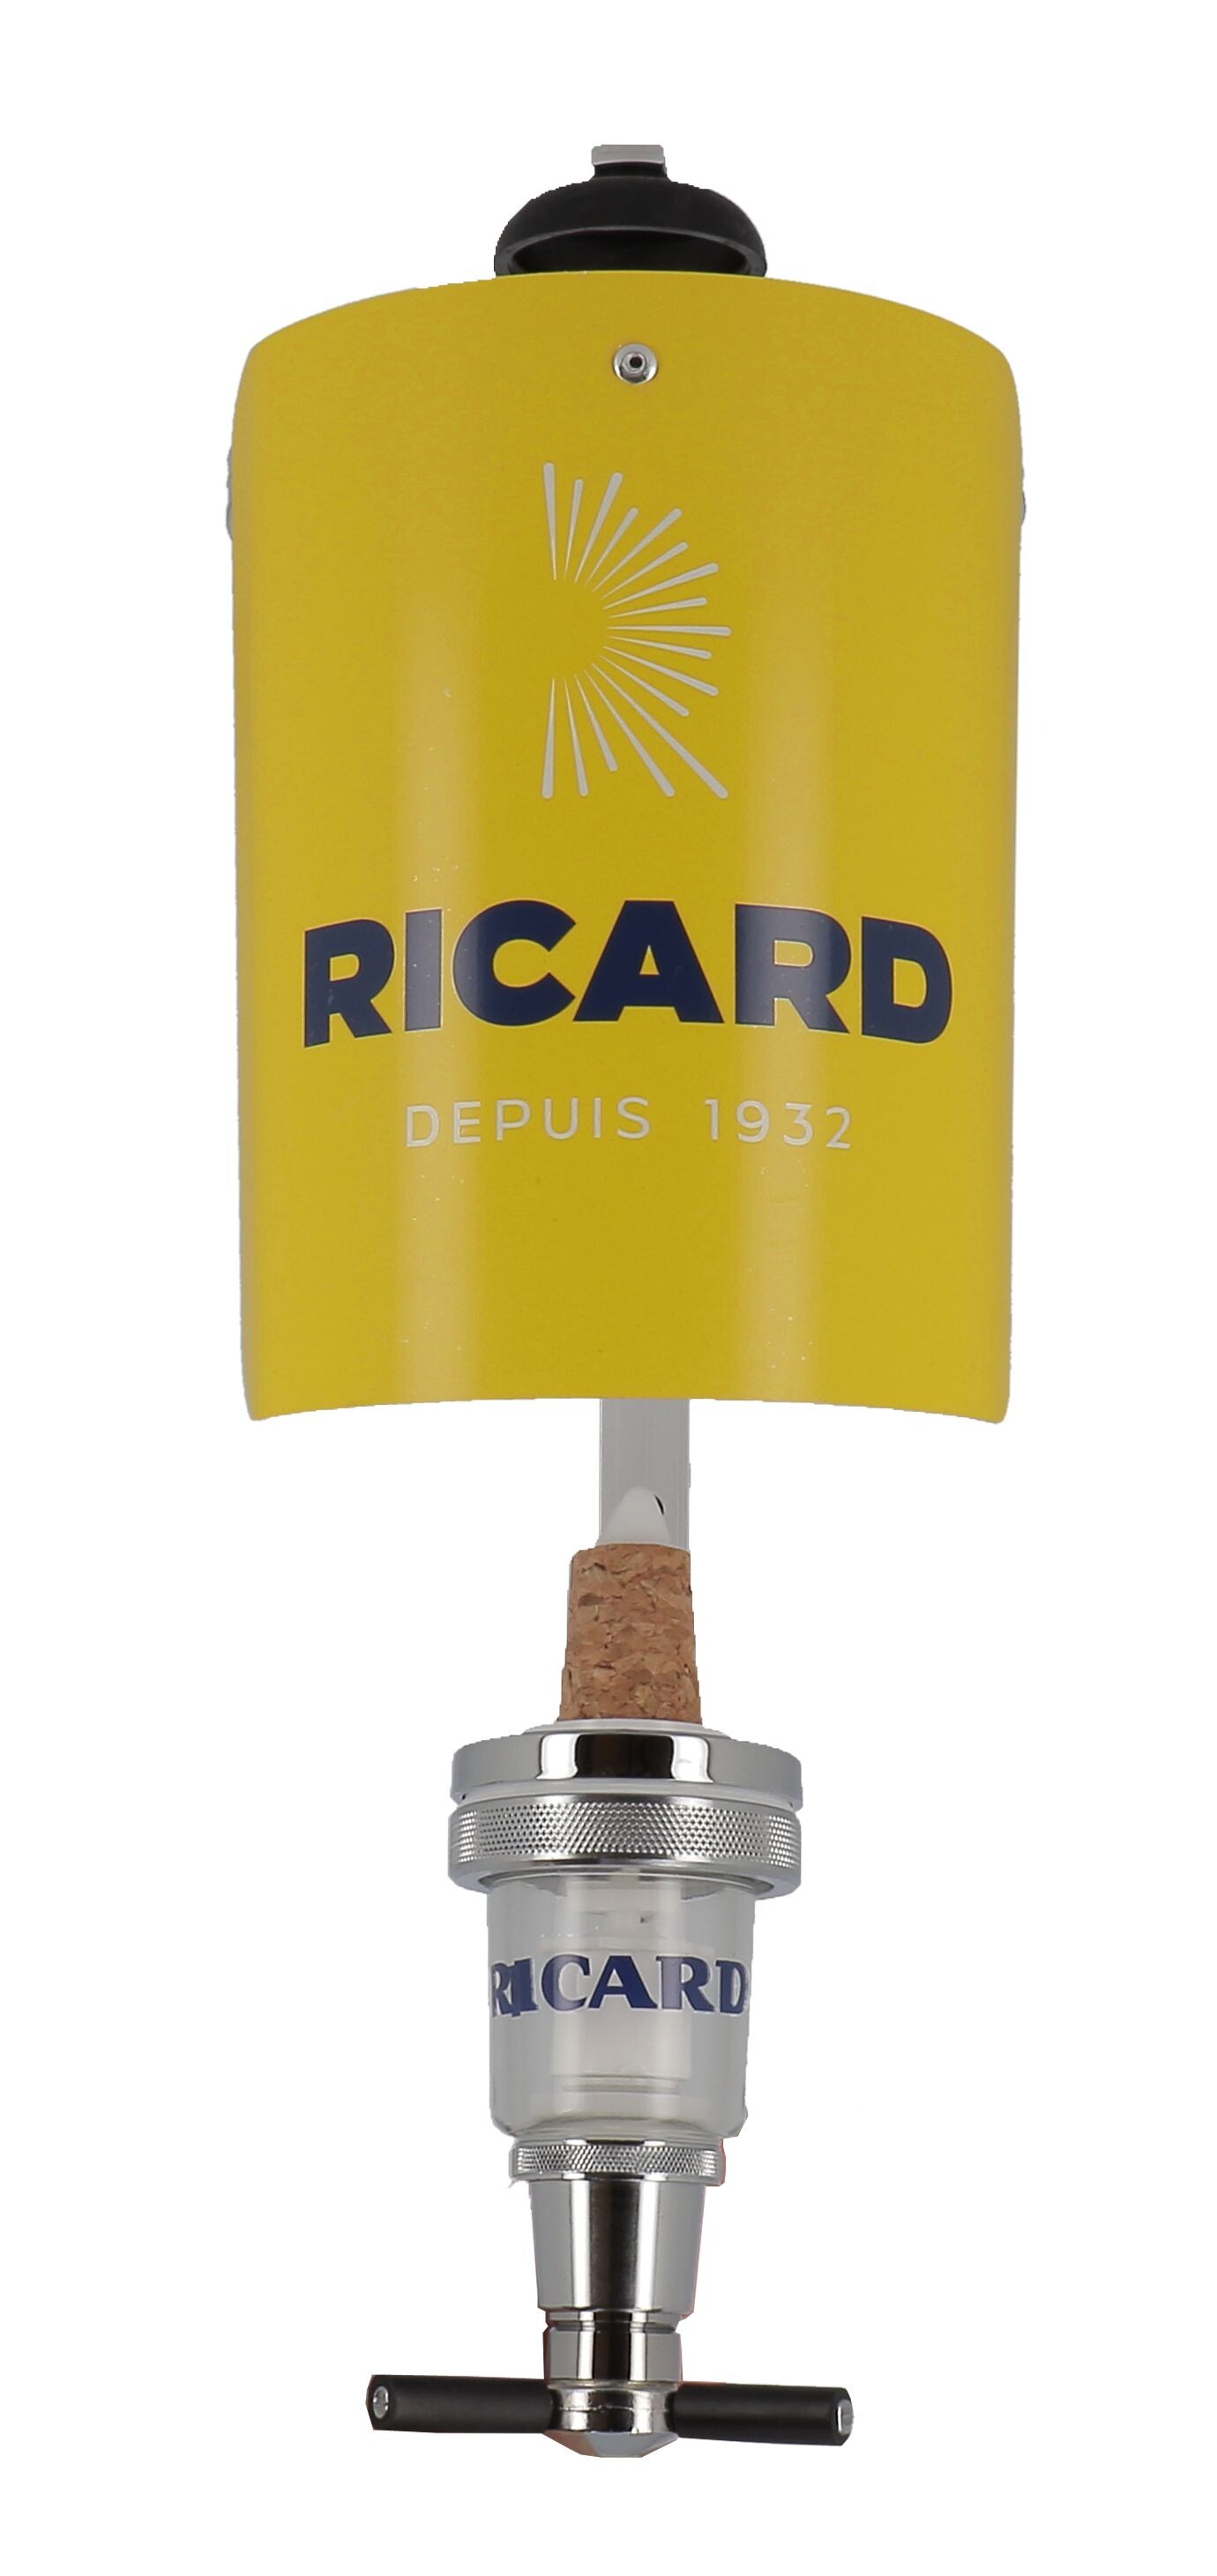 Ricard gallon 4.5 Litres 45% Pastis de Marseille - Nevejan